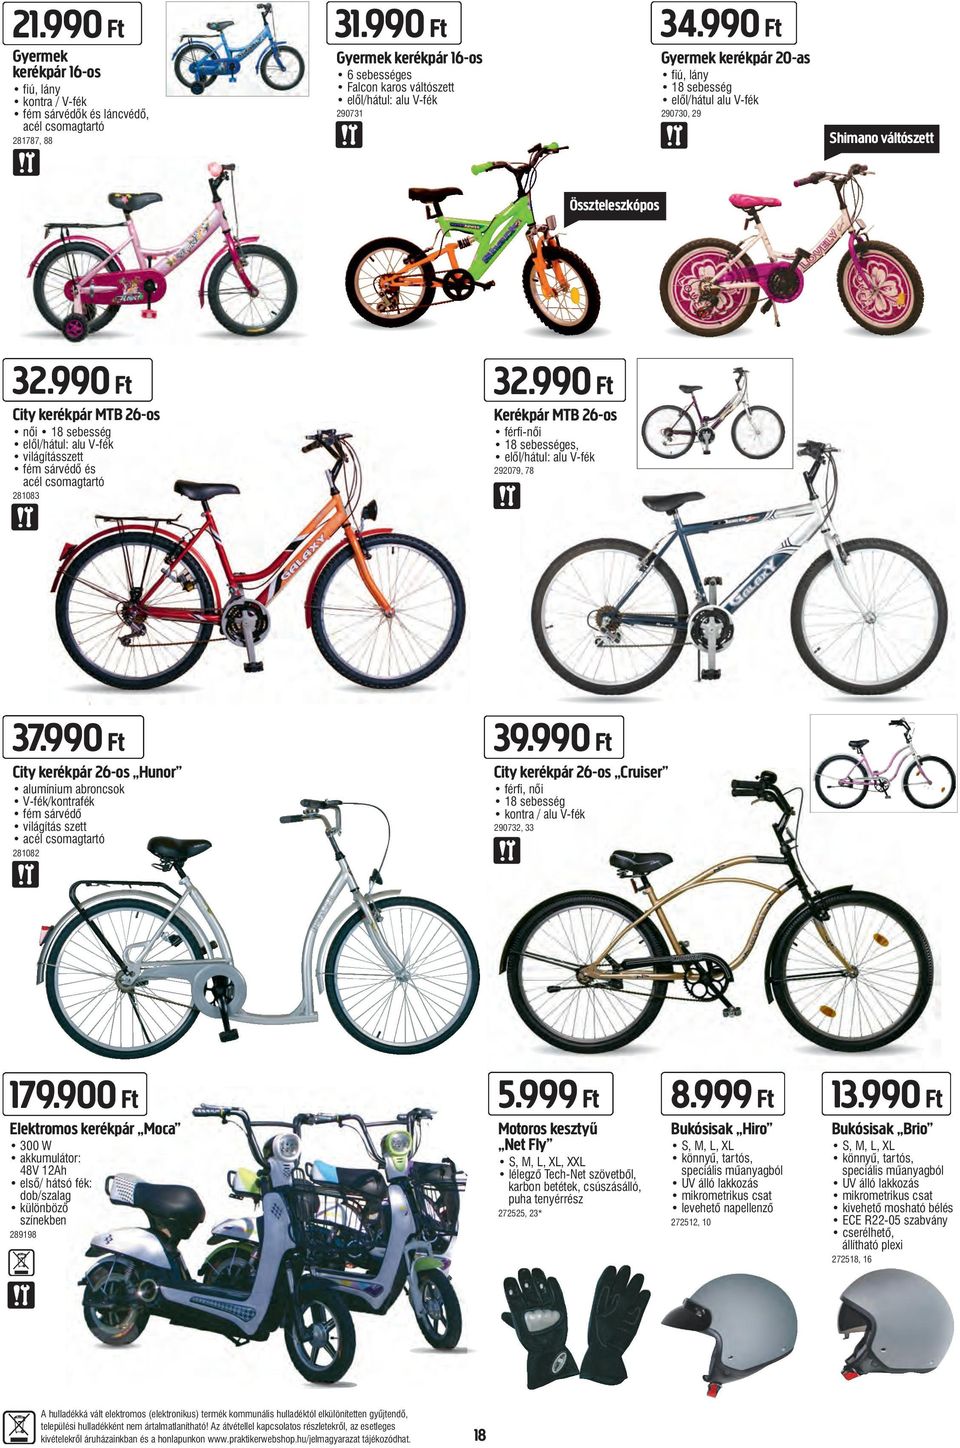 990 Ft Gyermek kerékpár 20-as fiú, lány 18 sebesség elől/hátul alu V-fék 290730, 29 Shimano váltószett Összteleszkópos 32.